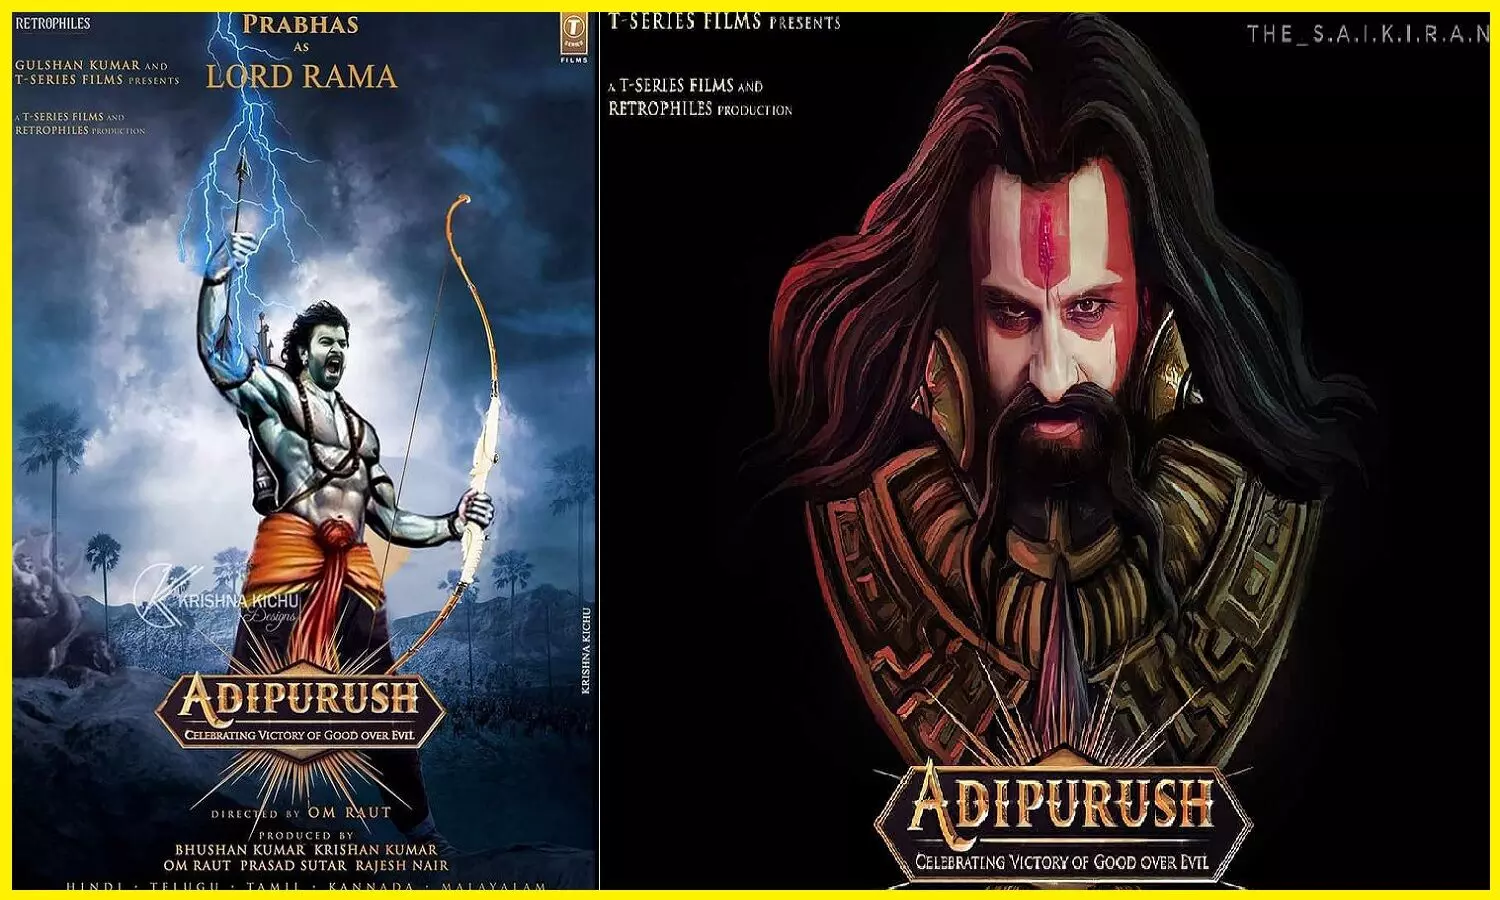 Adipurush Teaser Review: प्रभास और सैफ की फिल्म आदिपुरुष का टीजर और पोस्टर लॉन्च, ट्रेलर कब आएगा?